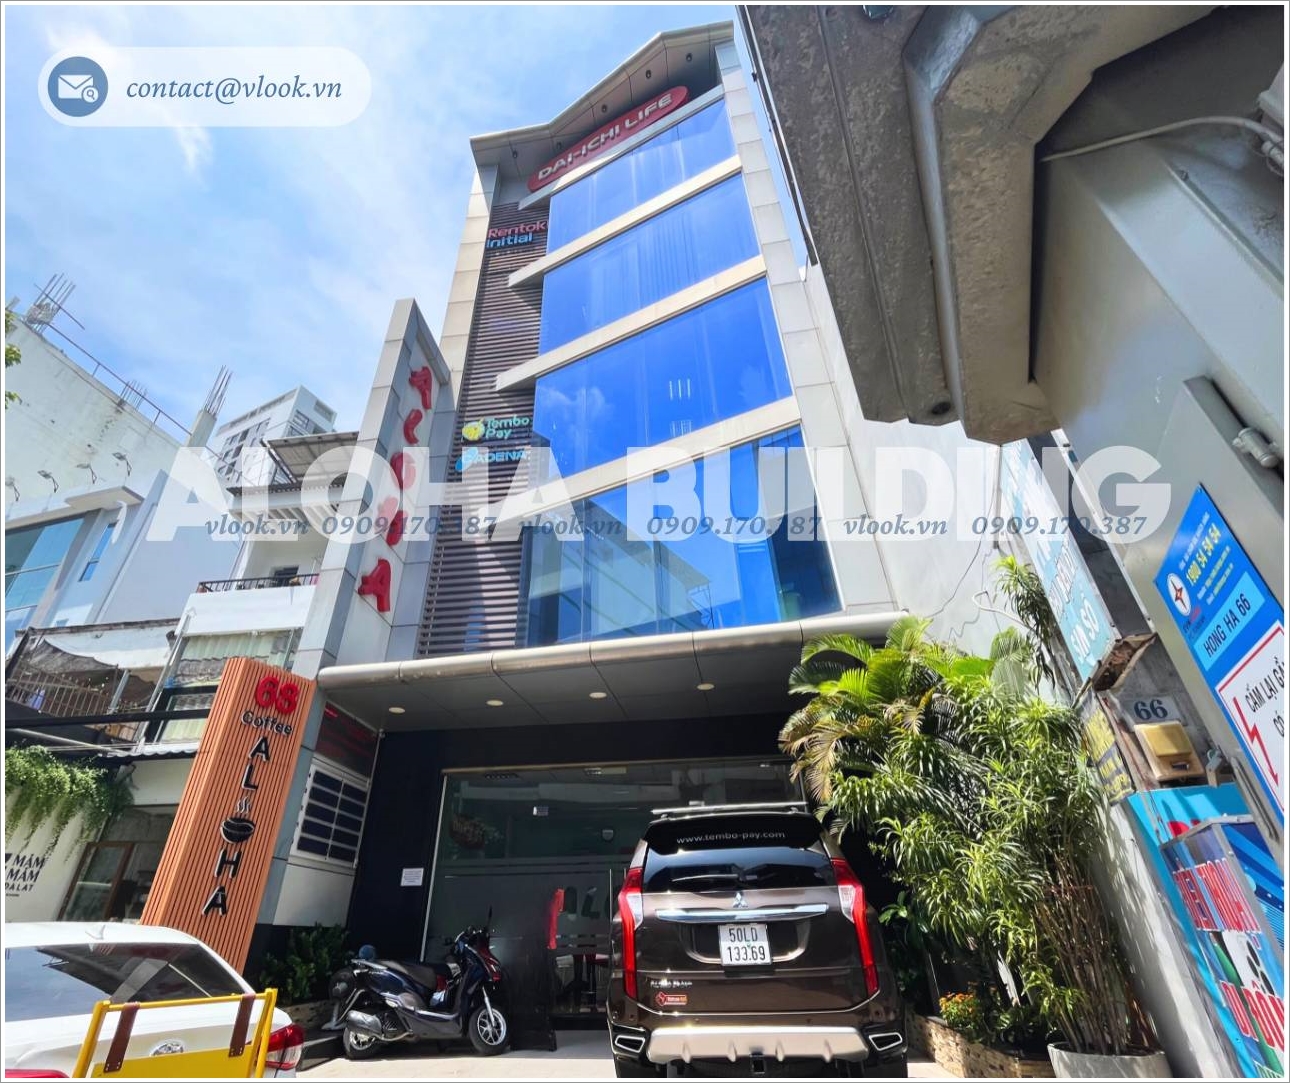 Cao ốc cho thuê văn phòng Aloha Building, Hồng Hà, Quận Tân Bình - Cho thuê văn phòng TP.HCM - vlook.vn